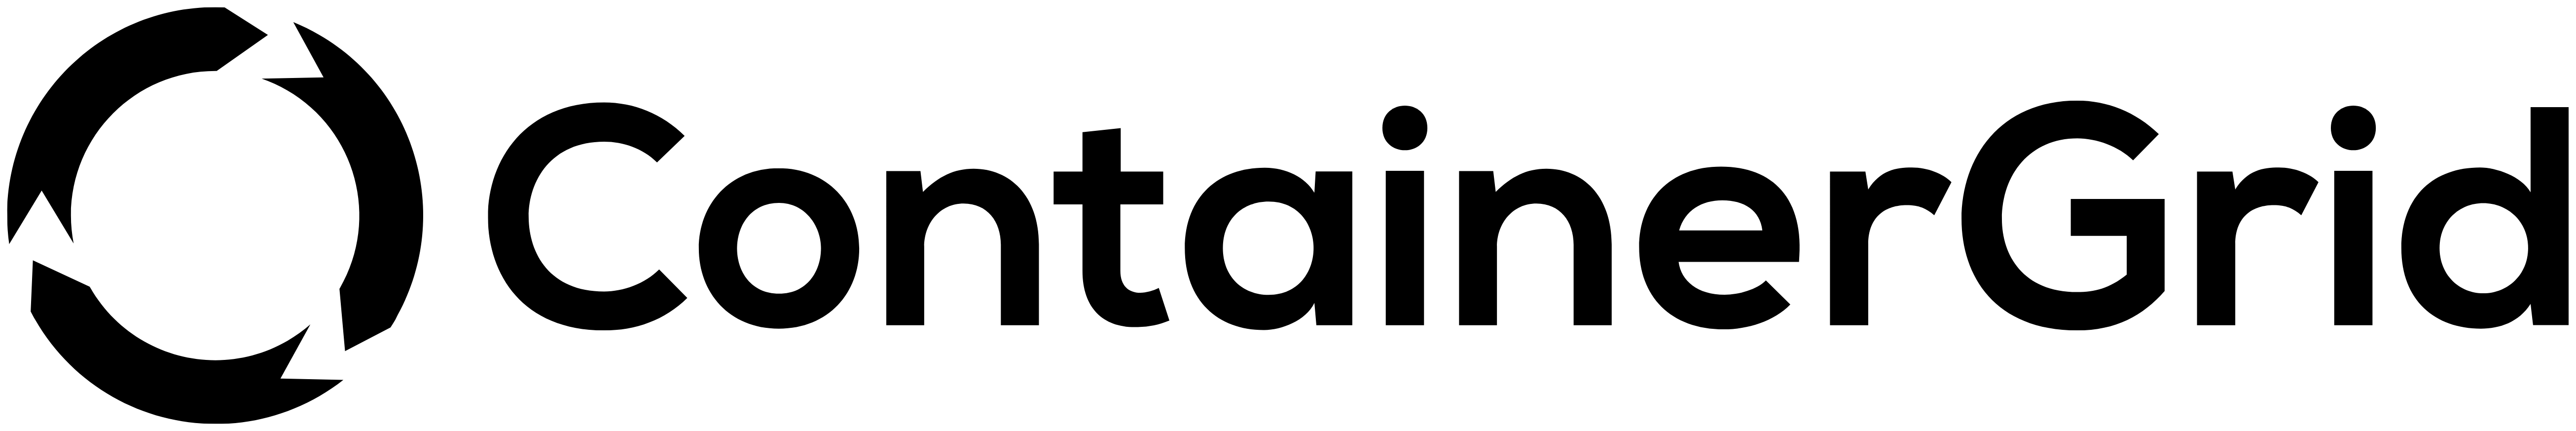 ContainerGrid Logo schwarz